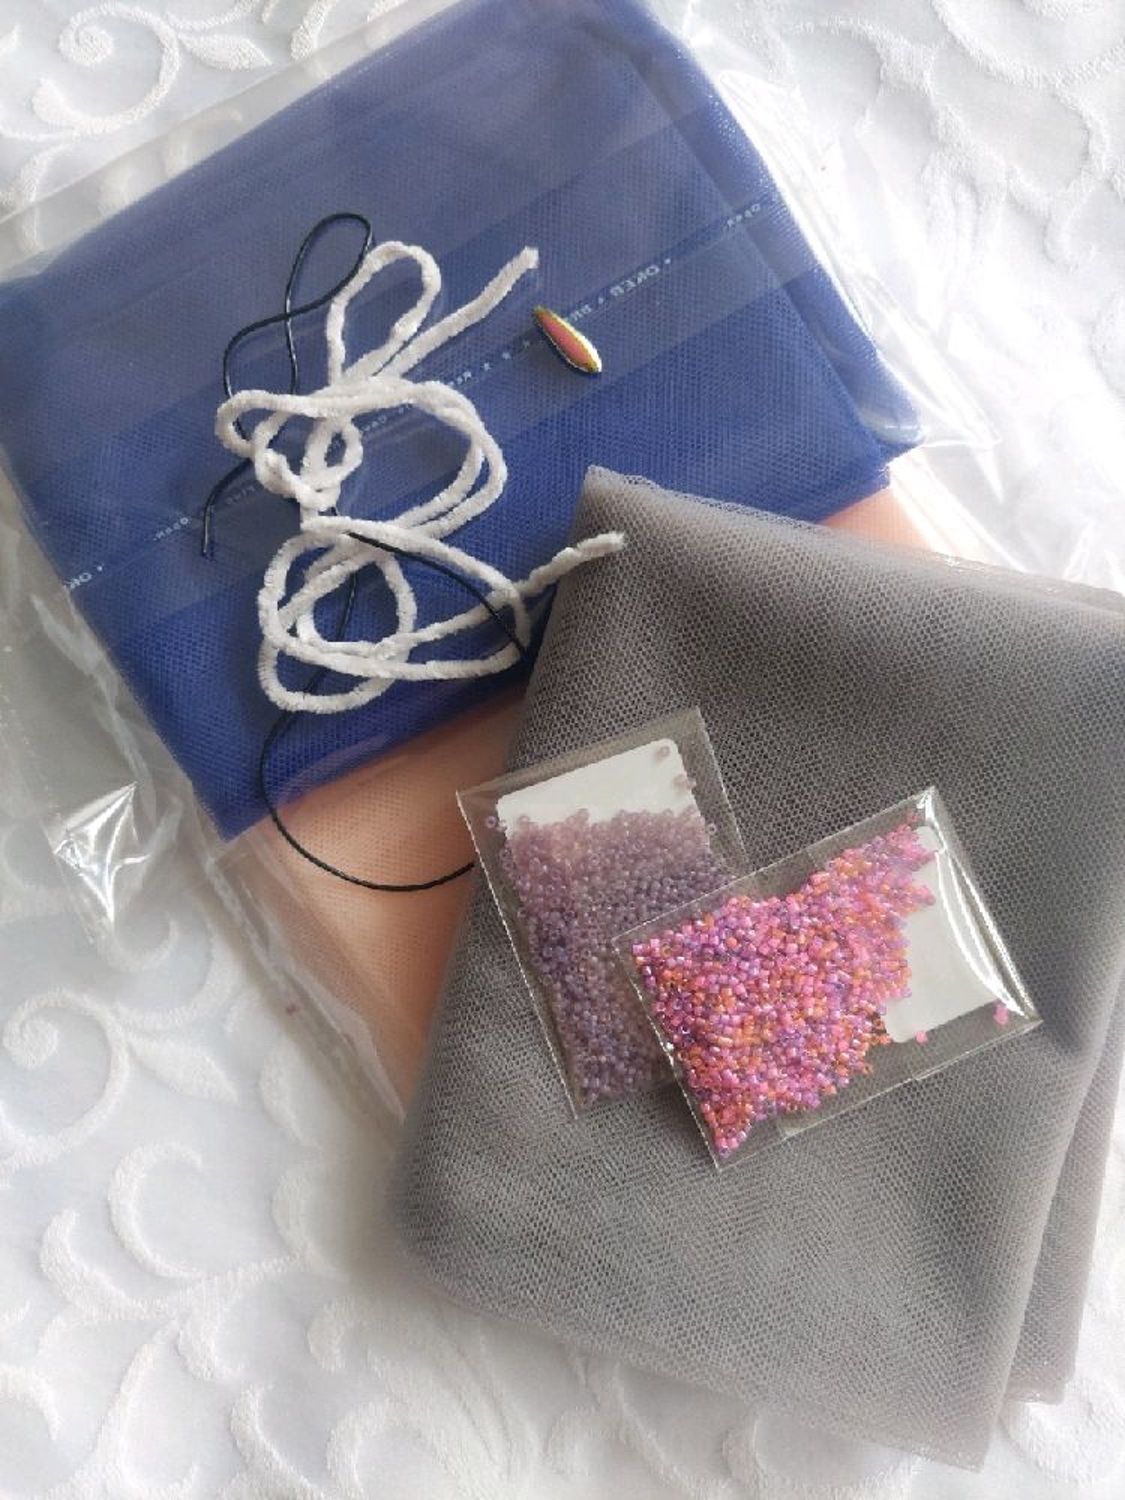 Photo №1 к отзыву покупателя Tatyana о товаре Итальянская сетка для вышивки , цвет синий and 7 more items